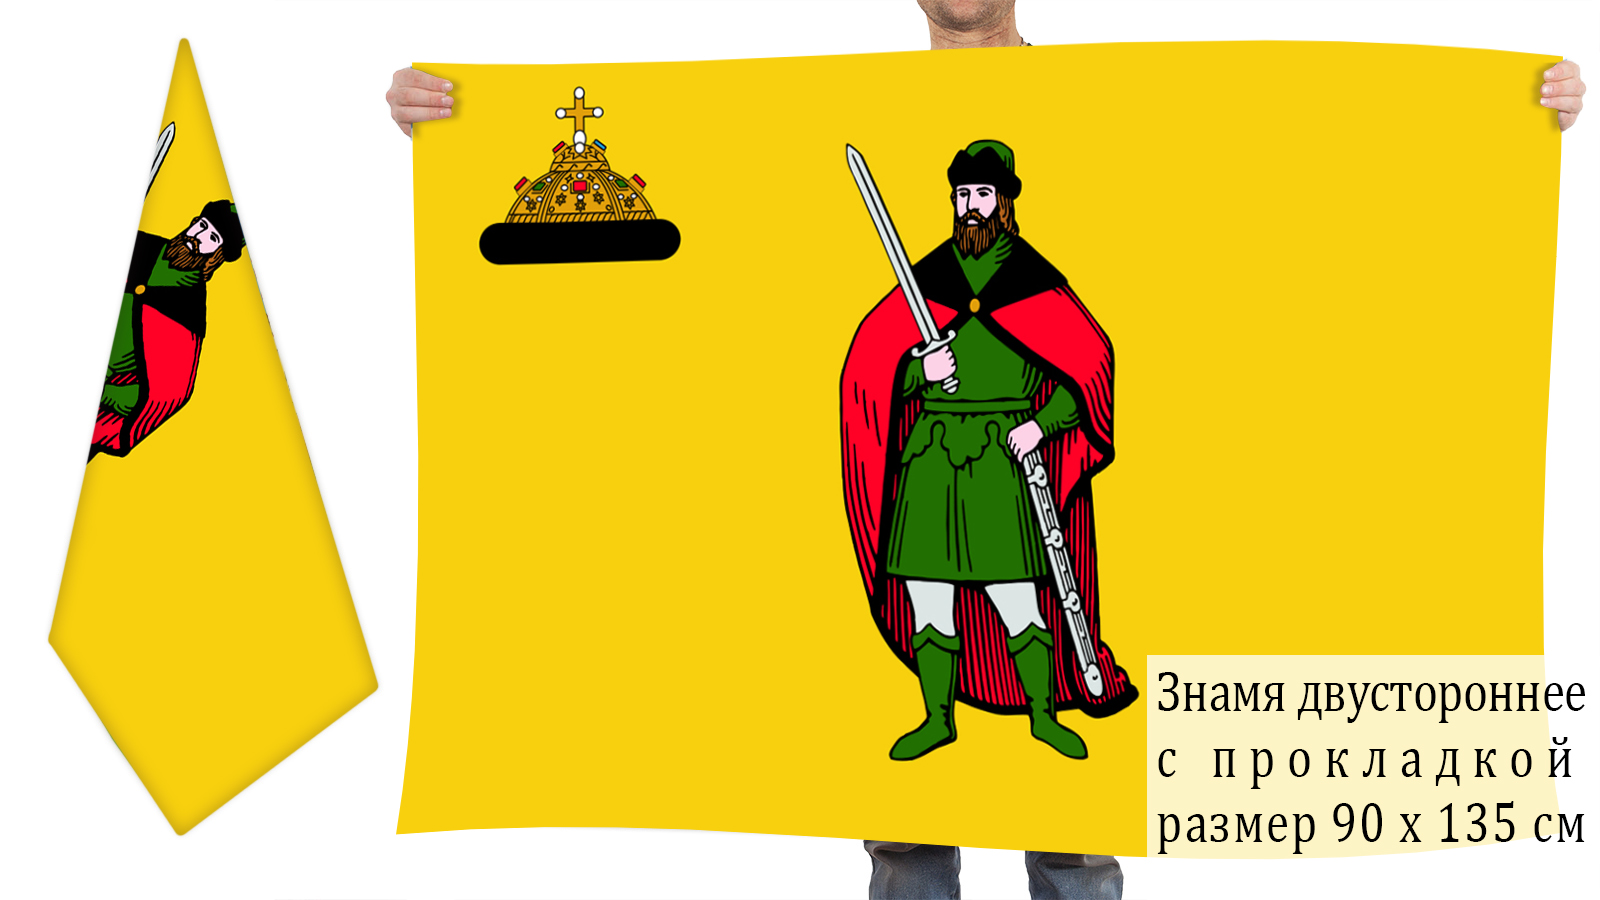 Двусторонний флаг Рязани